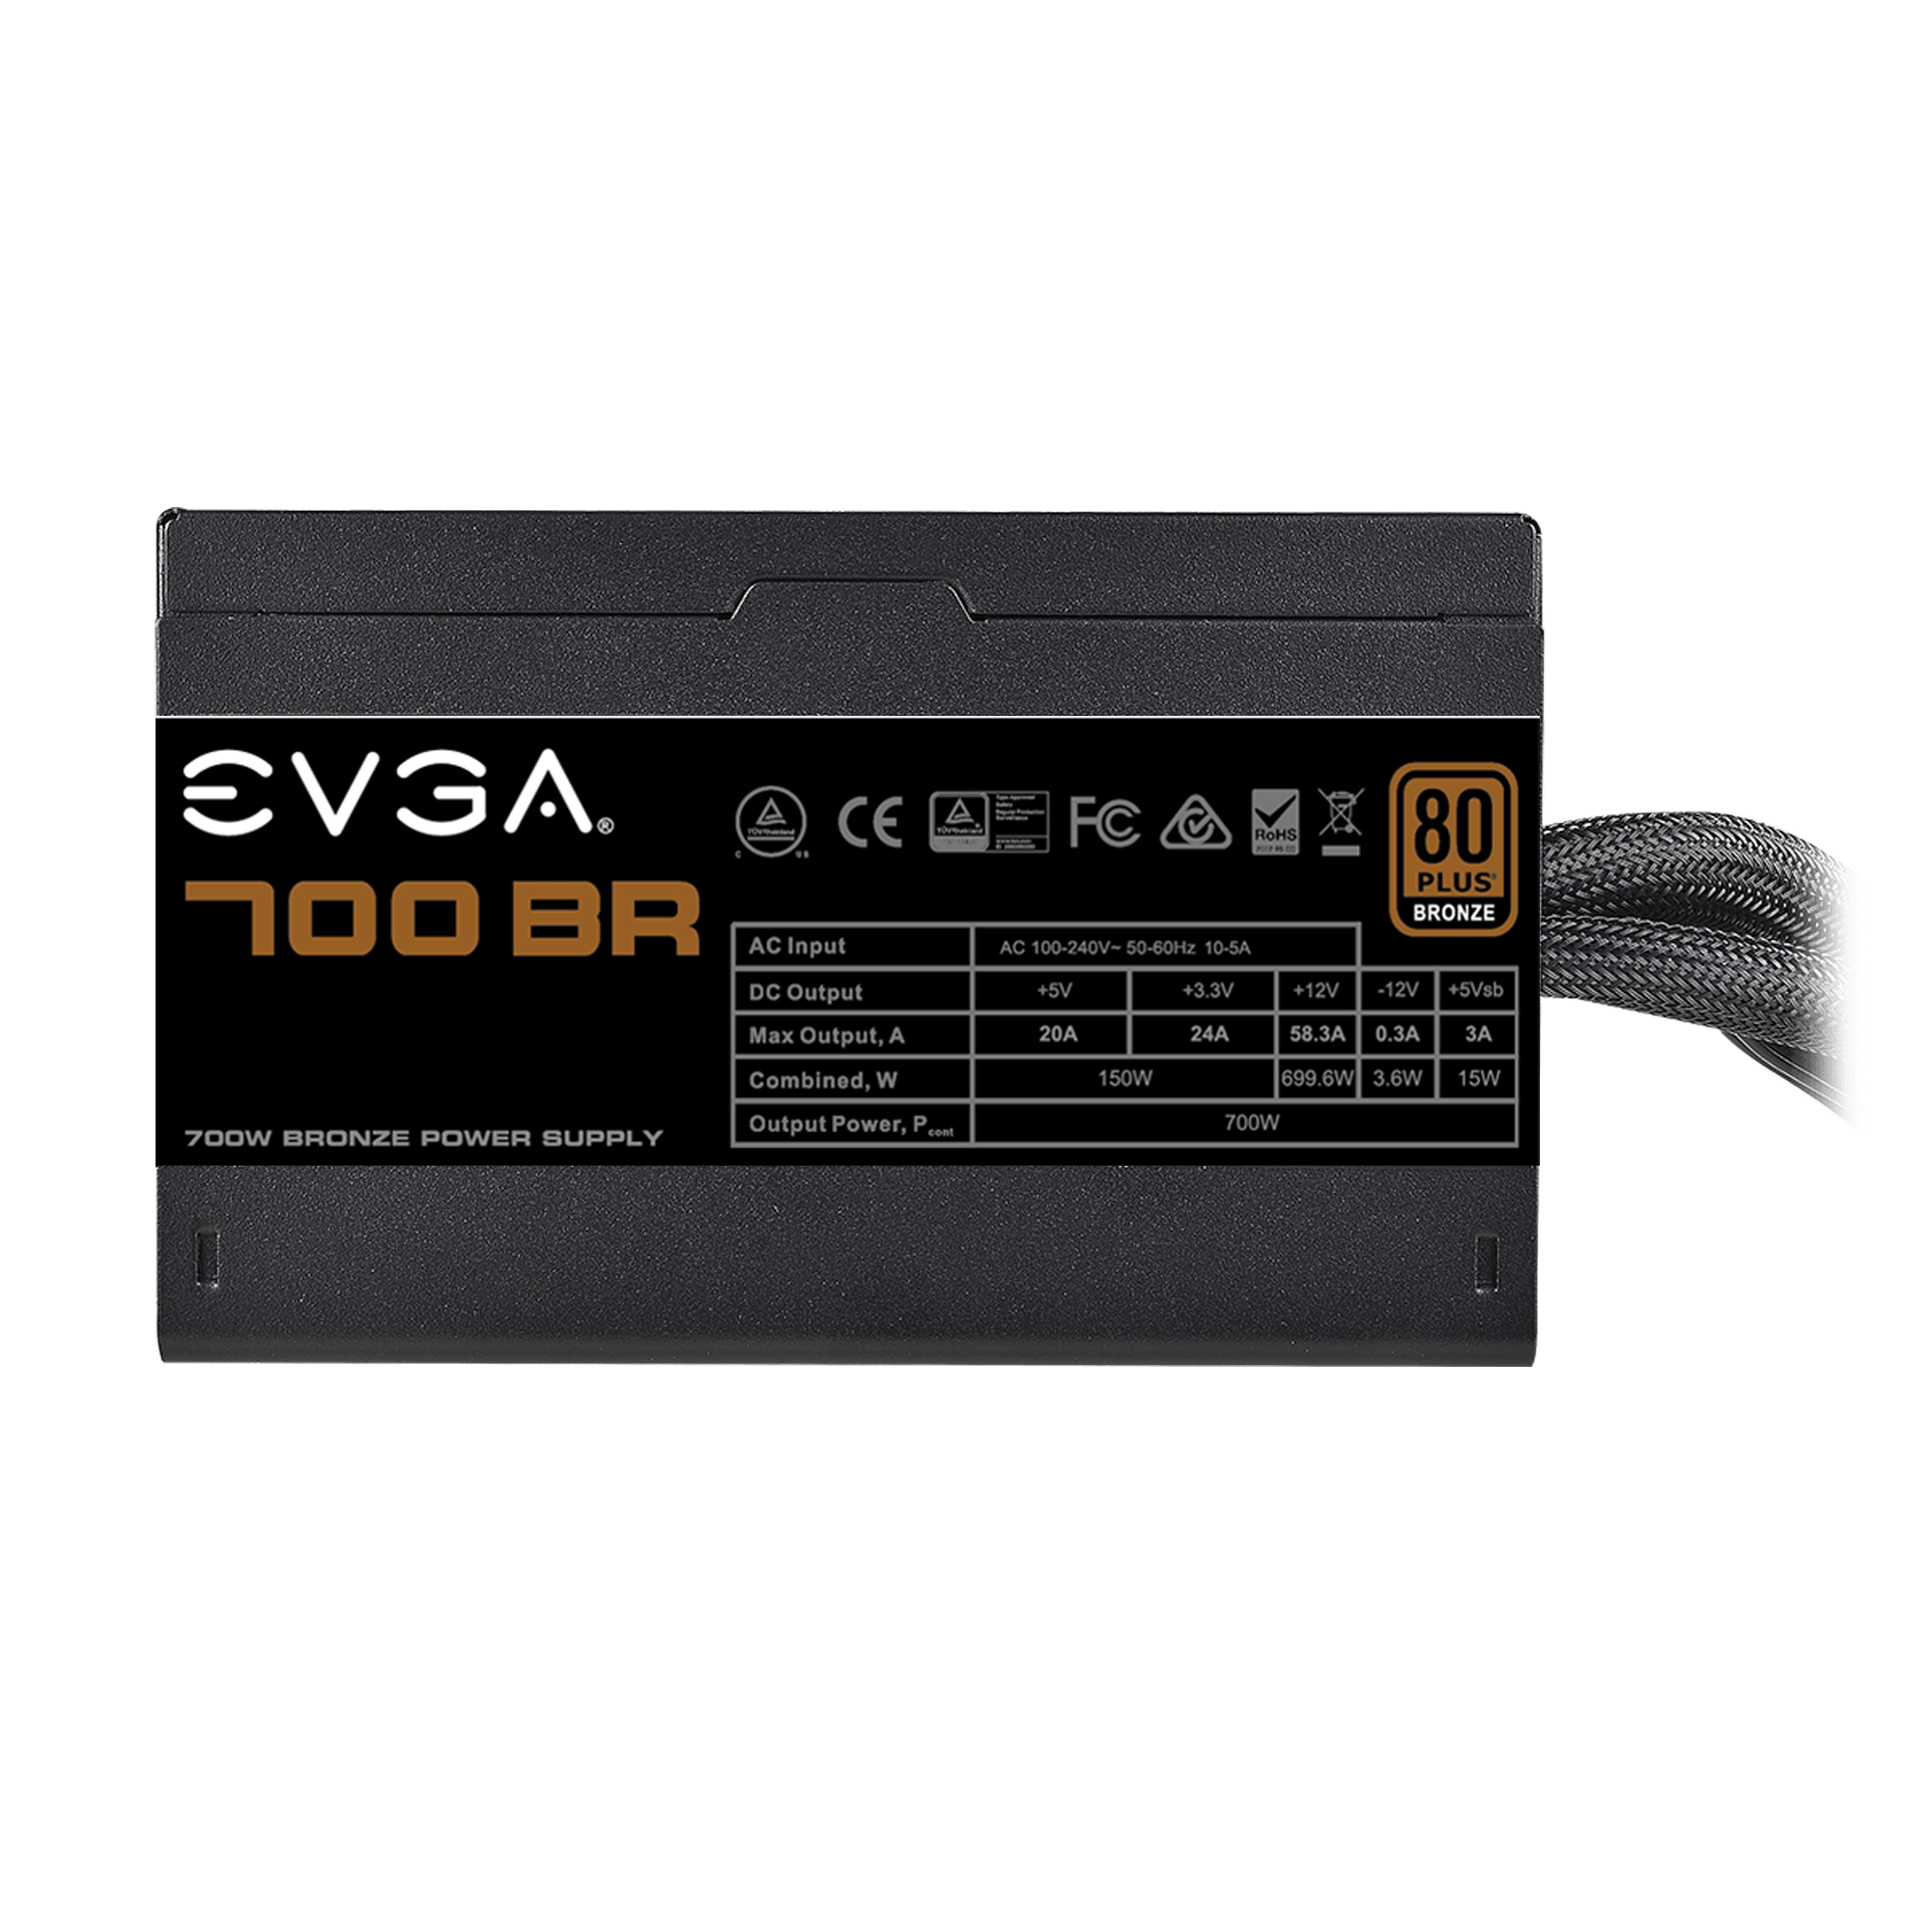 EVGA 700 BR 80+ BRONZE 700W NON-MODULAR POWER SUPPLY - 100-BR-0700-K3